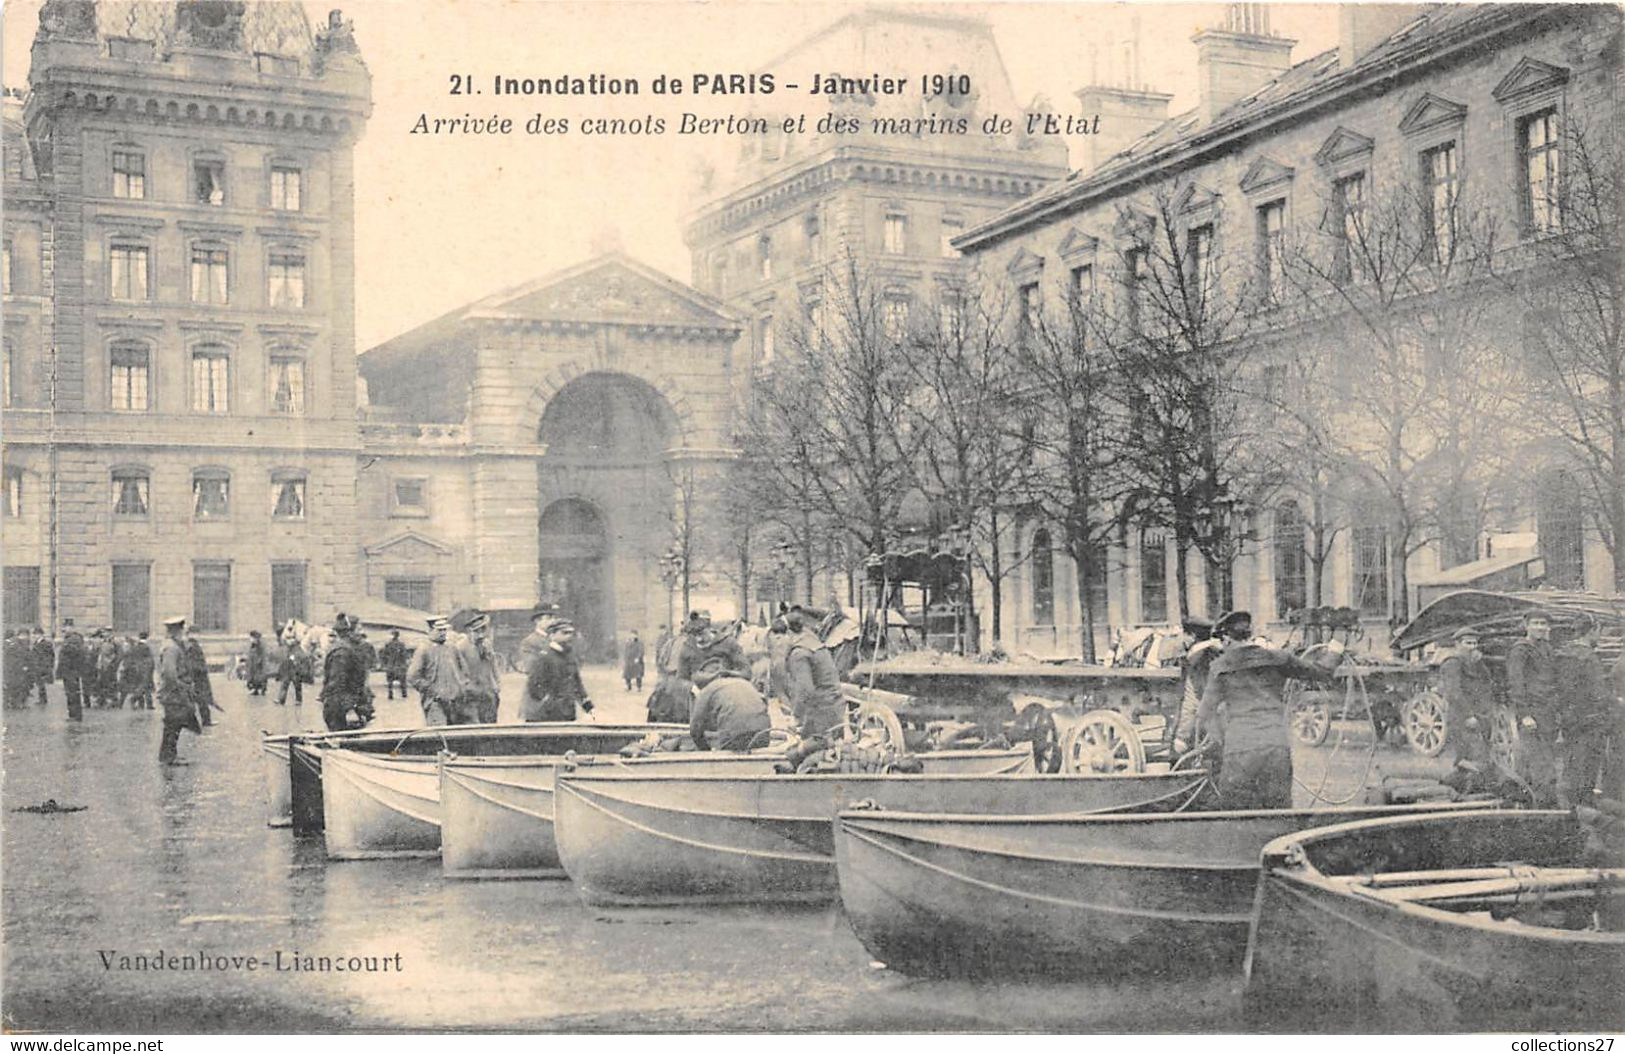 INONDATION DE PARIS , JANVIER 1910- ARRIVEE DES CANOTS BERTON ET DES MARINS DE L'ETAT - Paris Flood, 1910